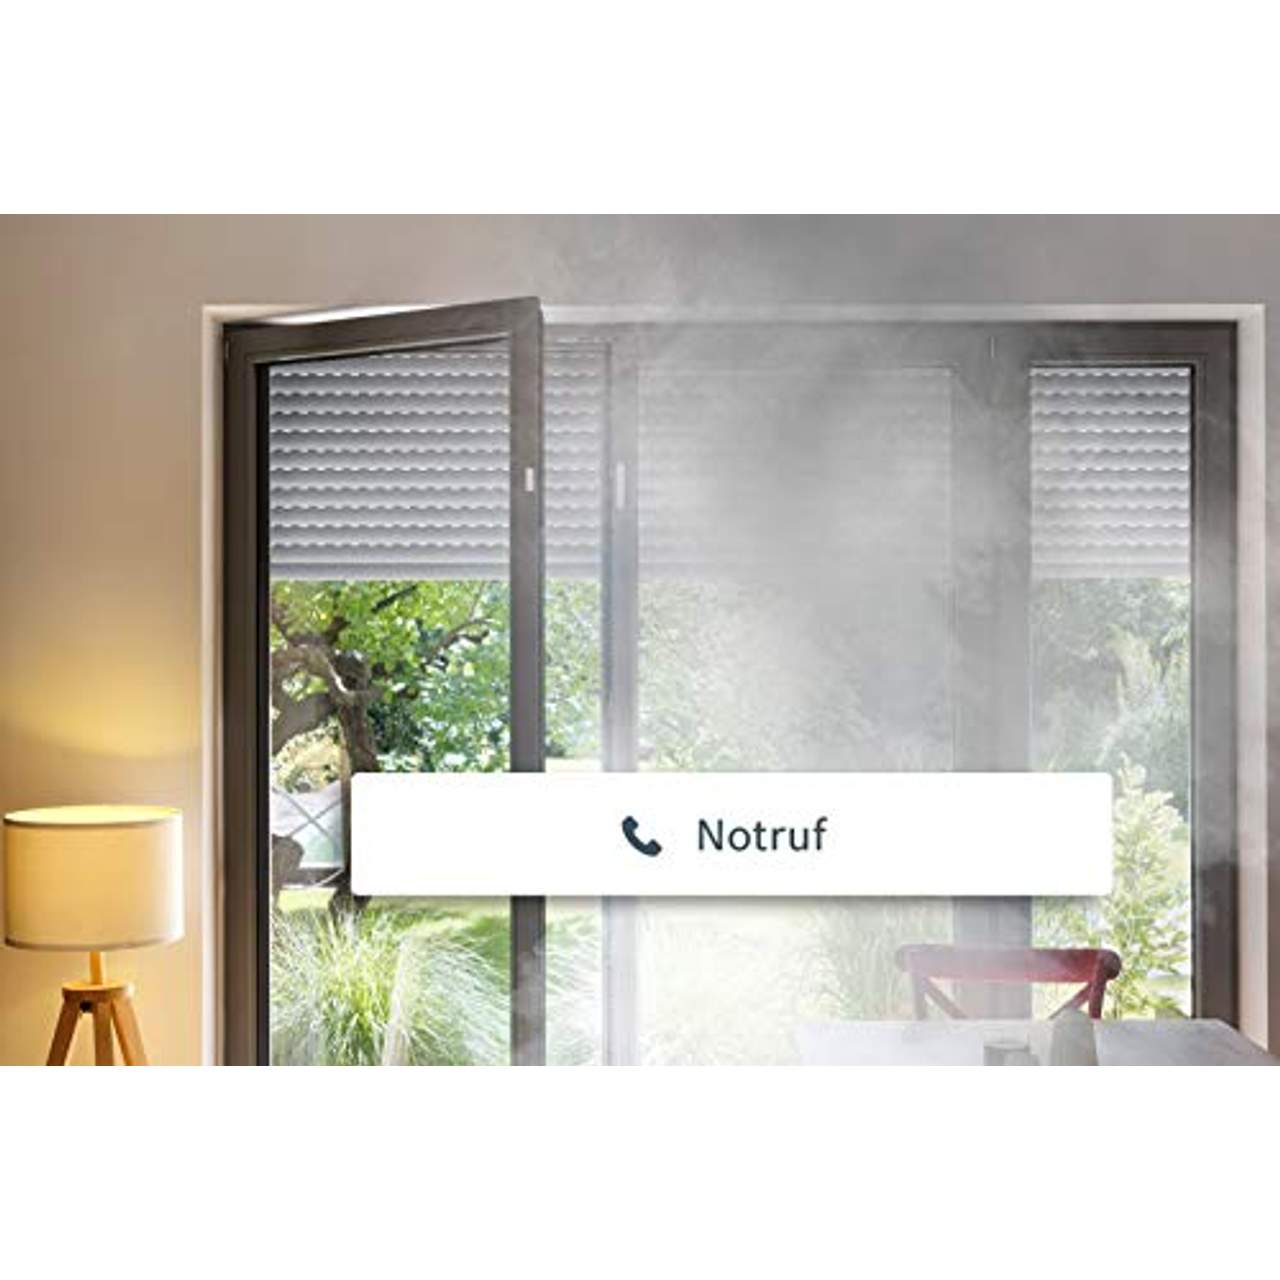 Bosch Smart Home Rauchmelder mit App-Funktion